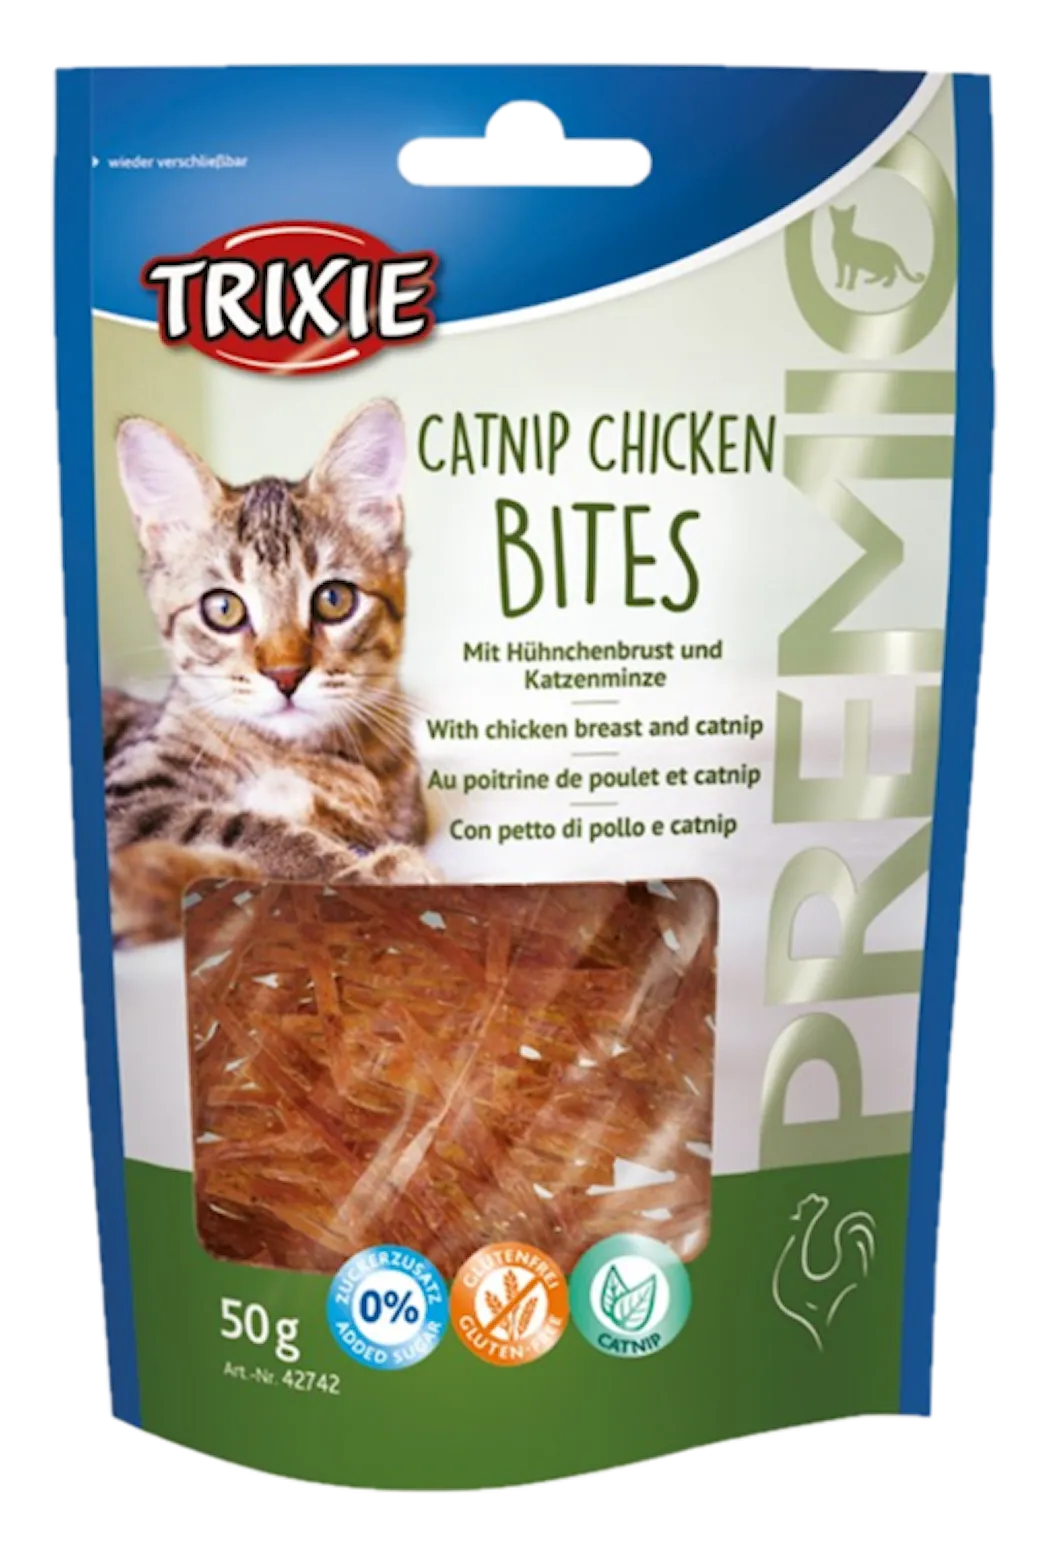 Premio Catnip Chicken Bites 50 g